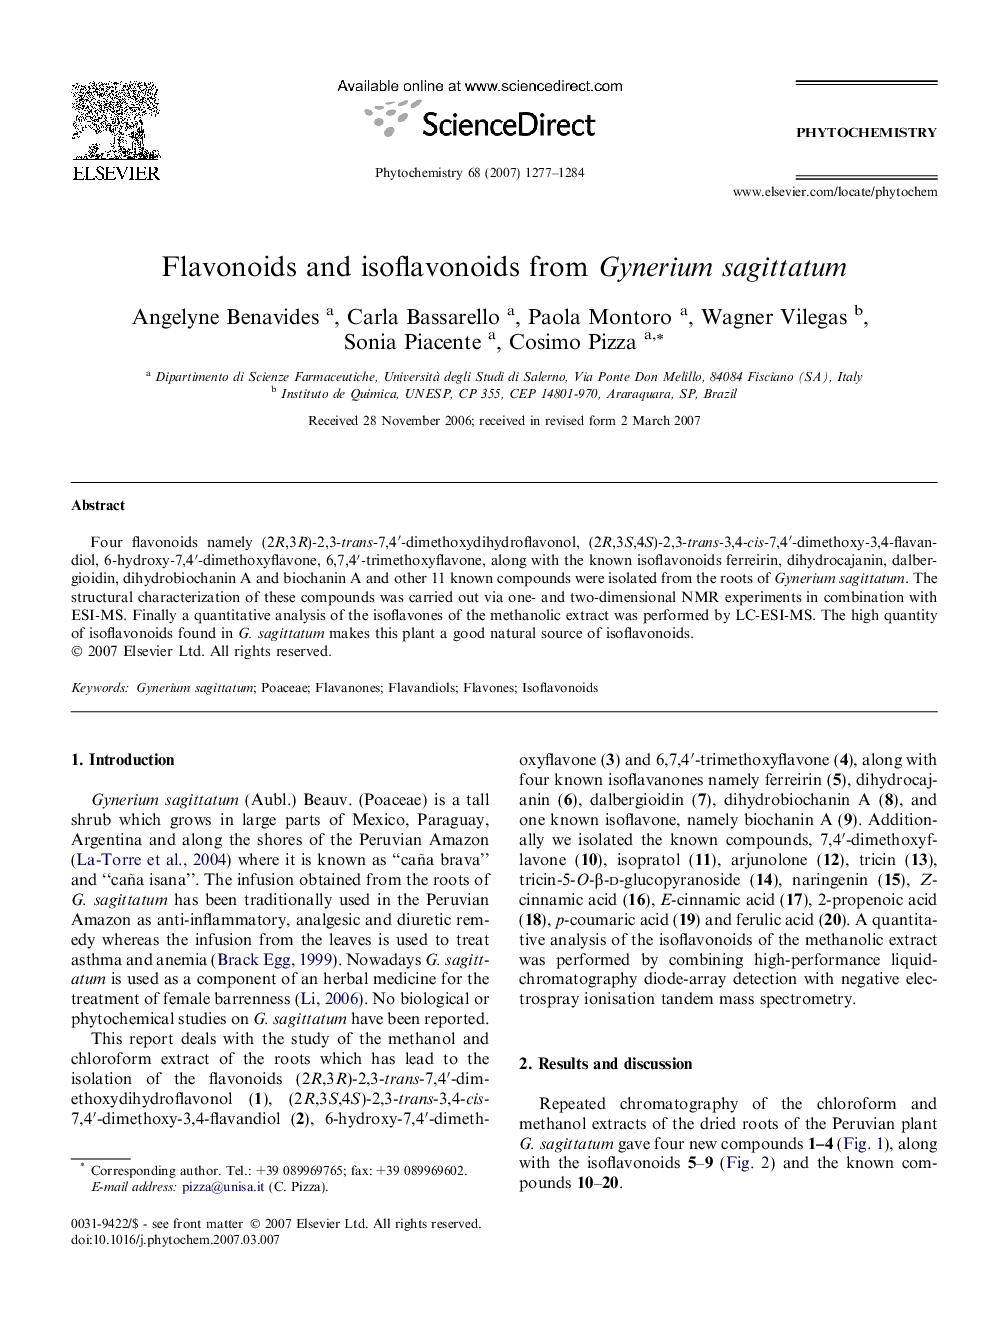 Flavonoids and isoflavonoids from Gynerium sagittatum